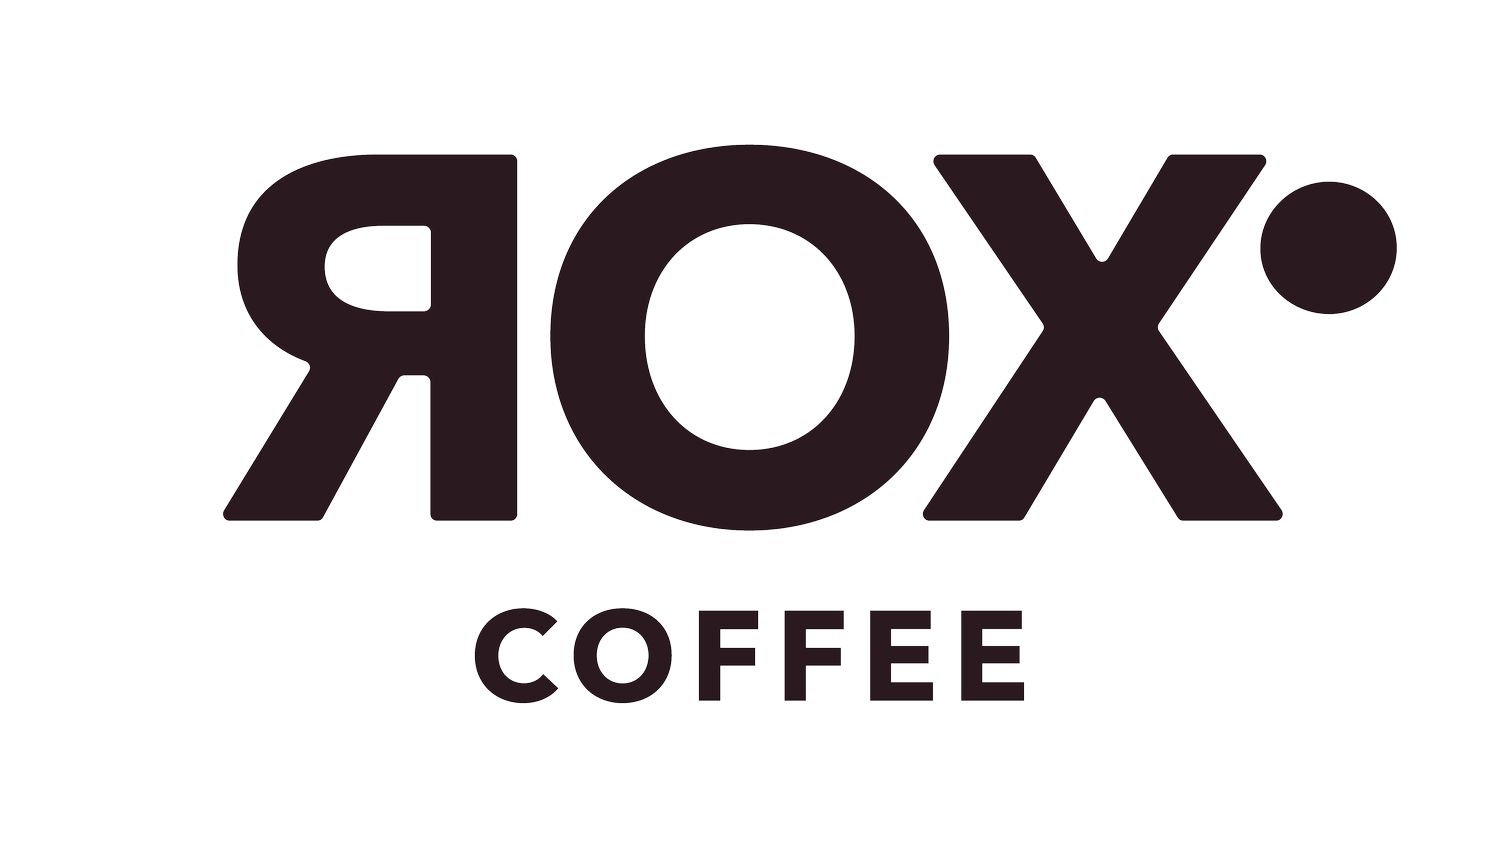 Rox Coffee